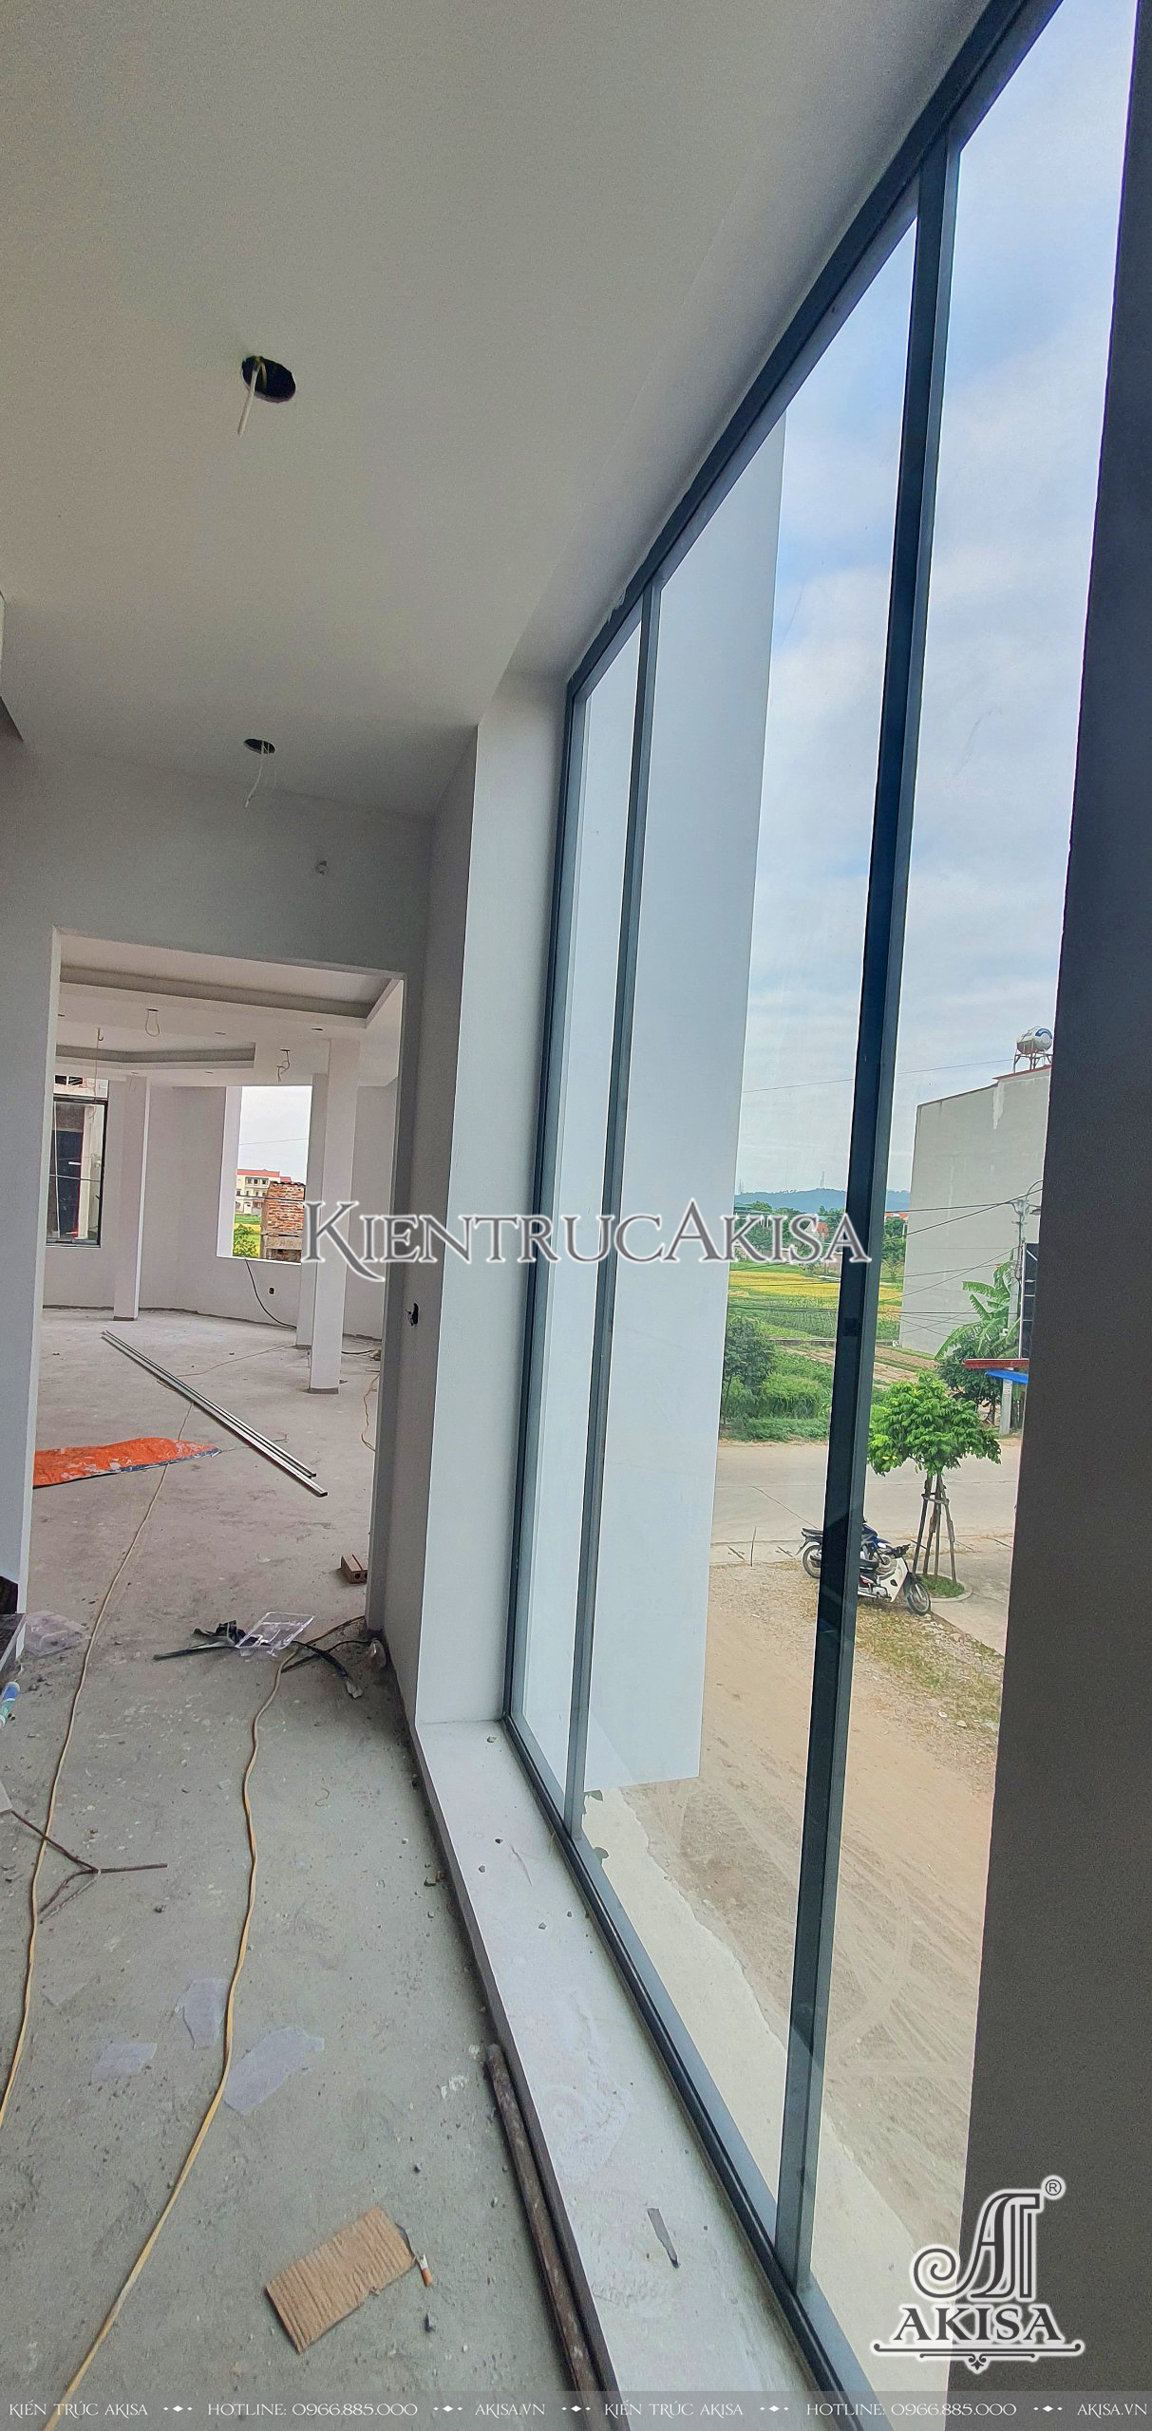 hình ảnh thi công nội thất nhà phố 4 tầng tại Bắc Ninh